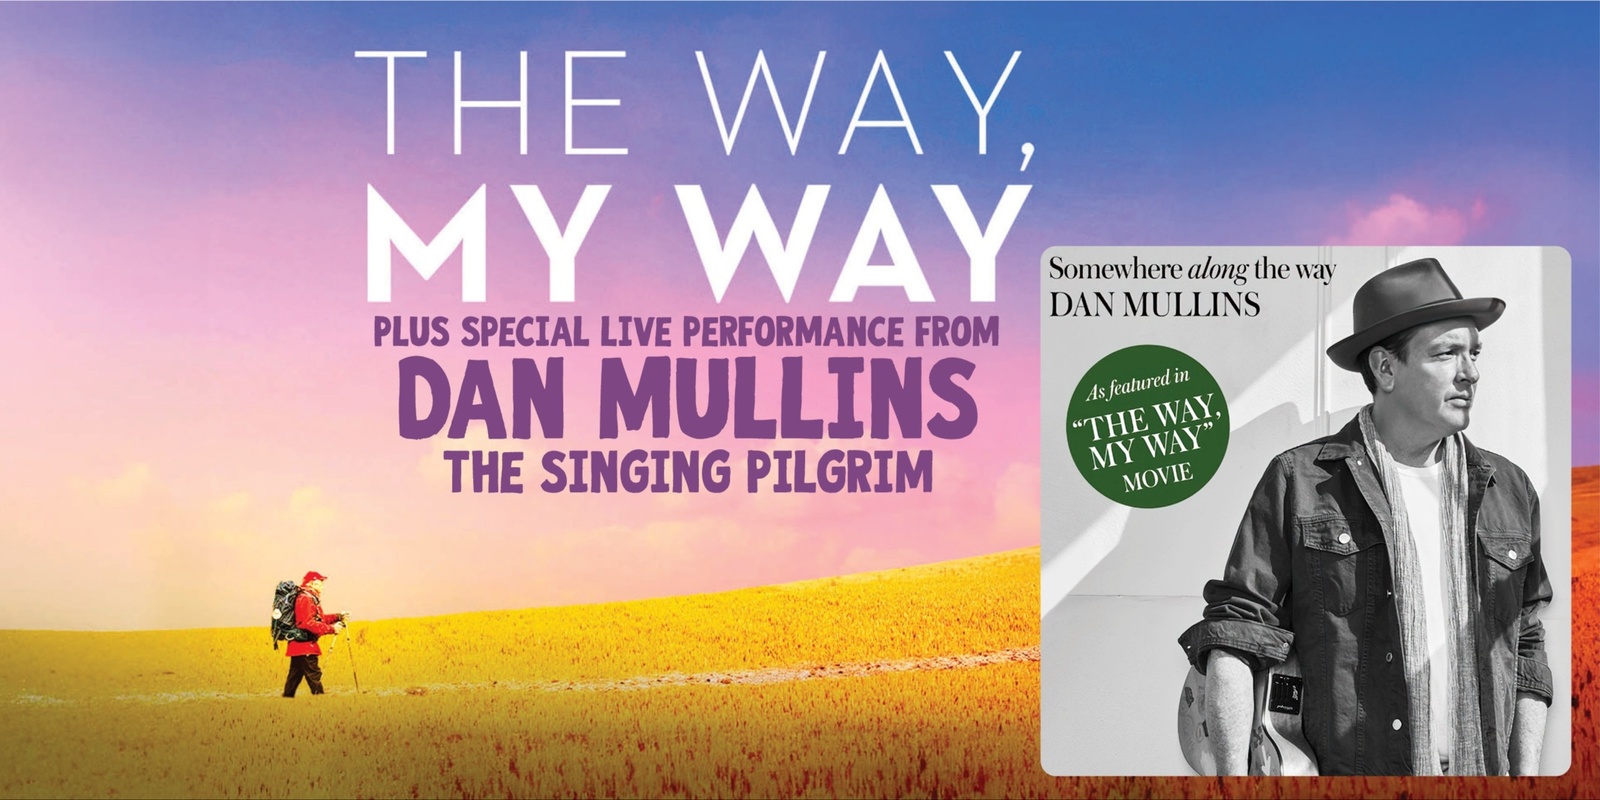 Banner image for Dan Mullins The Singing Pilgrim concert + The Way, My Way film screening